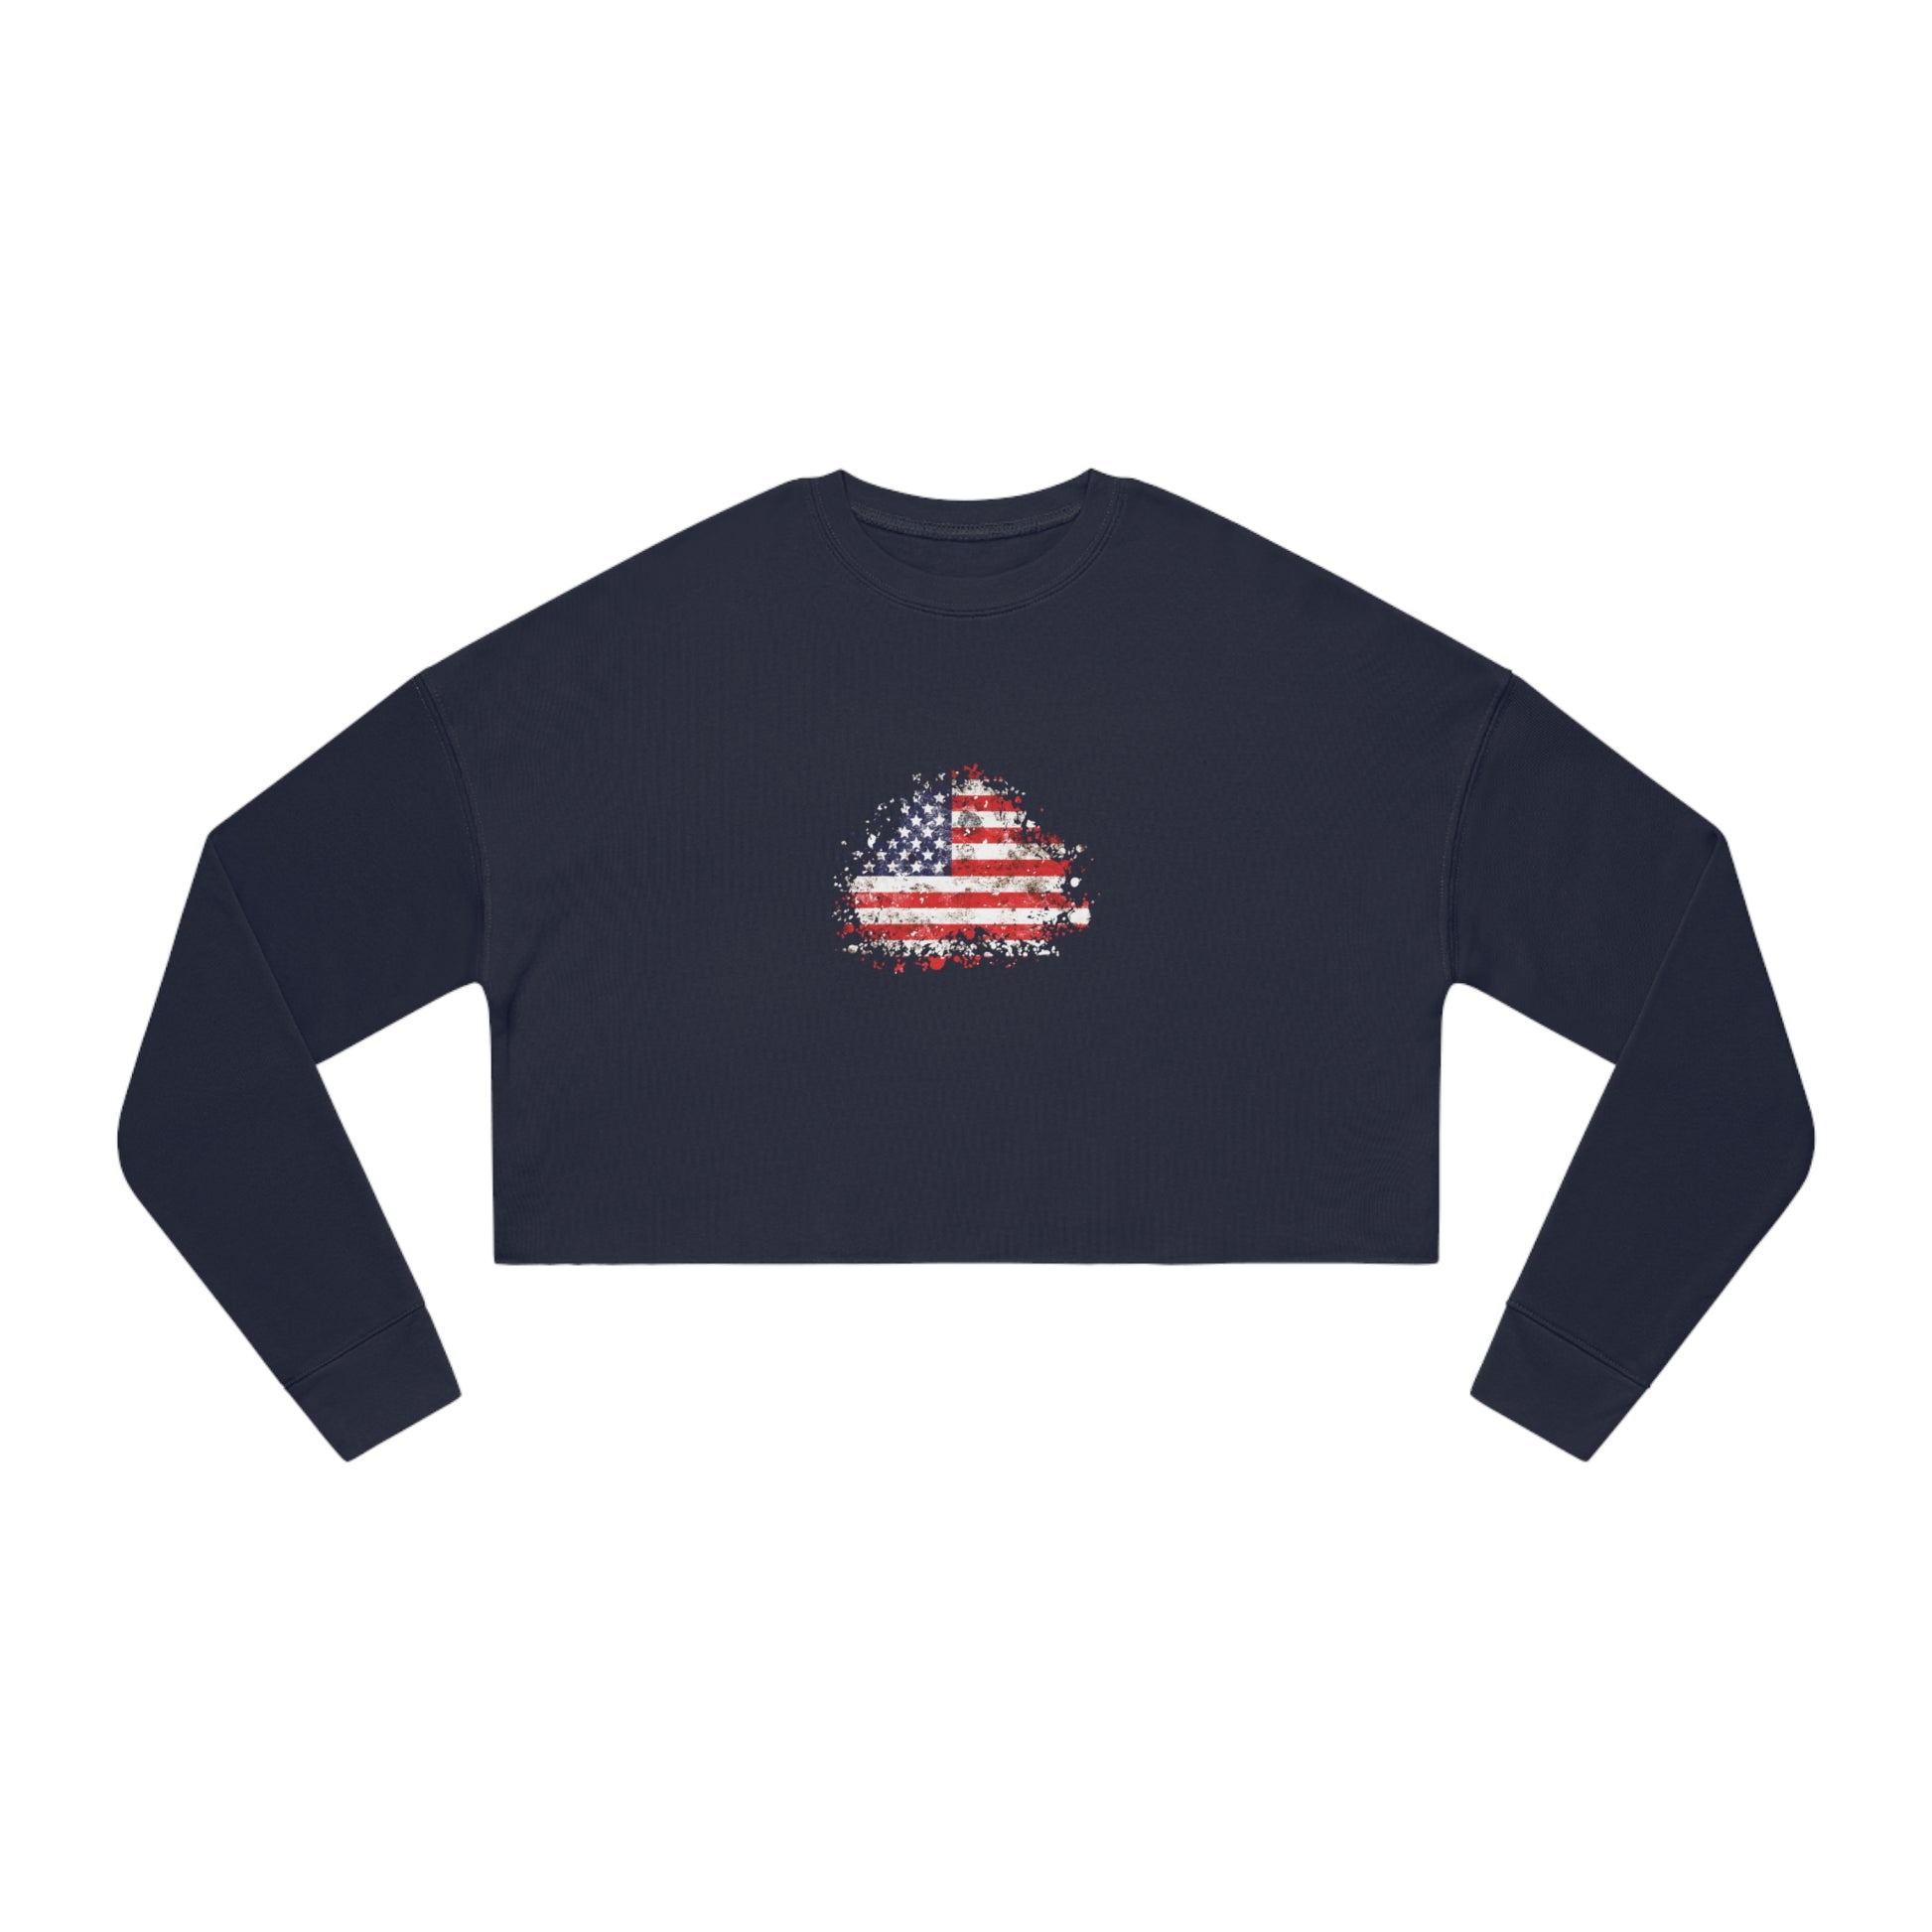 American Flag Sweatshirt Women's in navy front